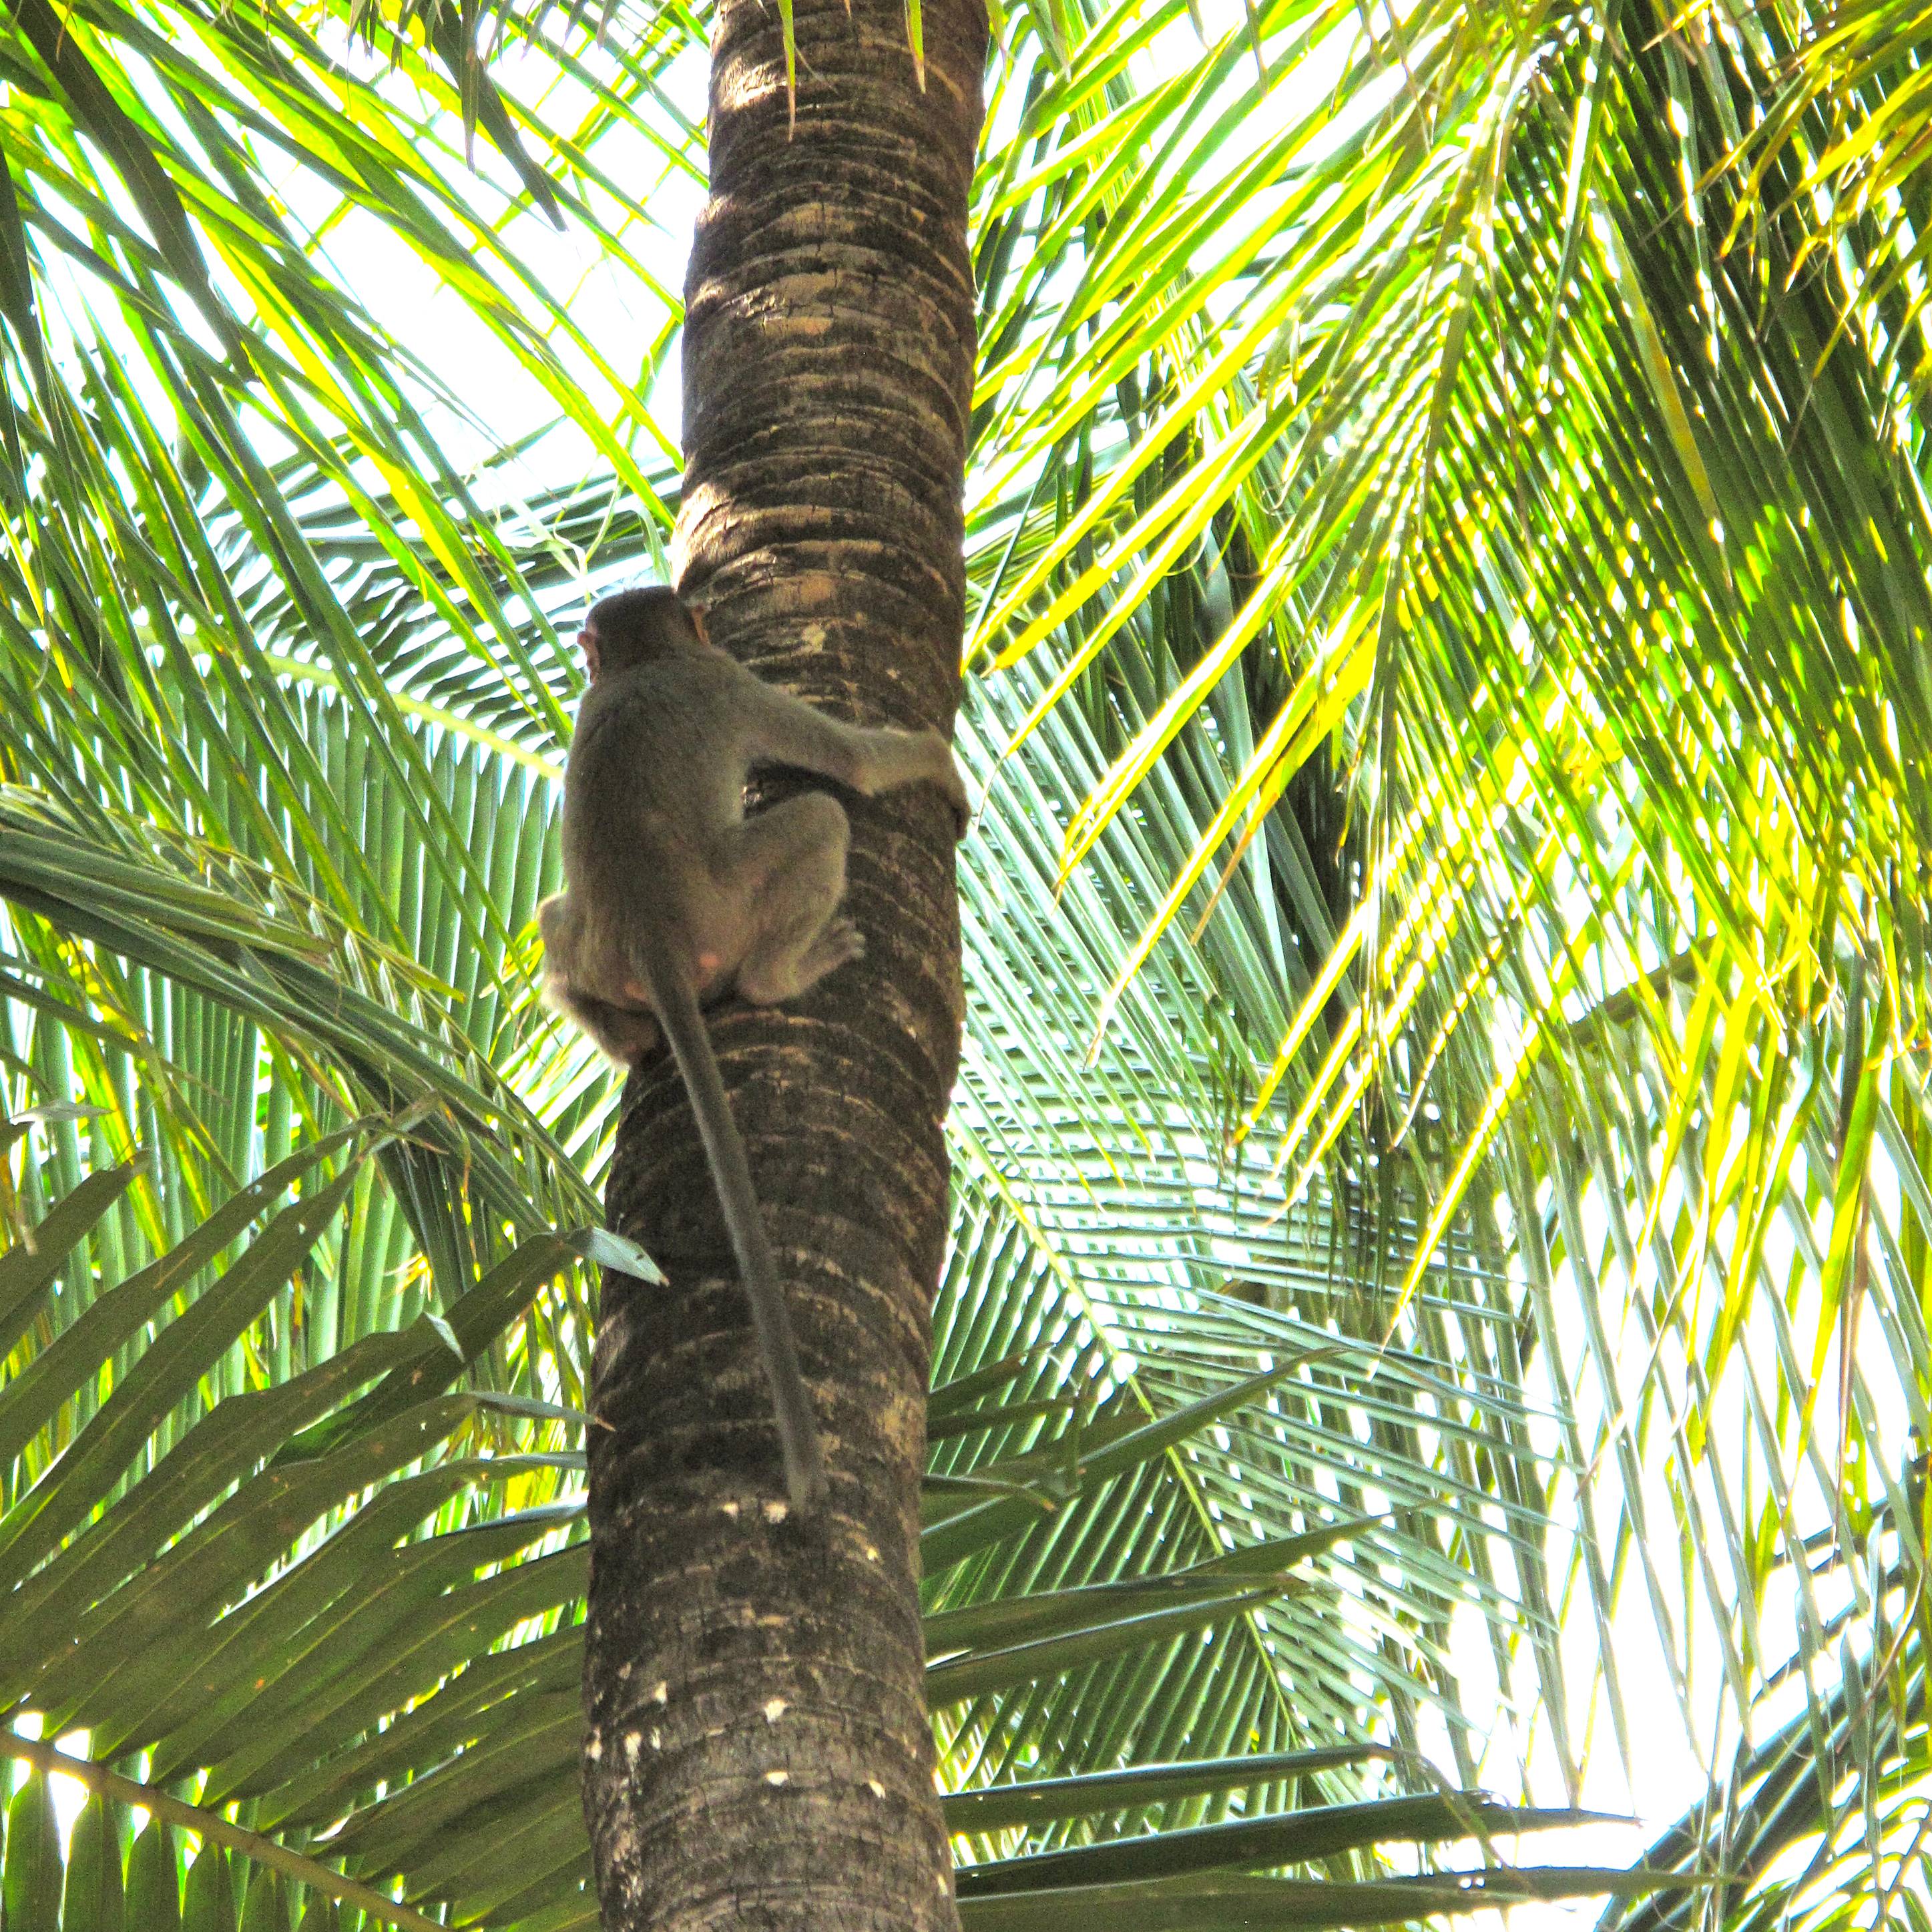 Monkeys in Coconut Palms